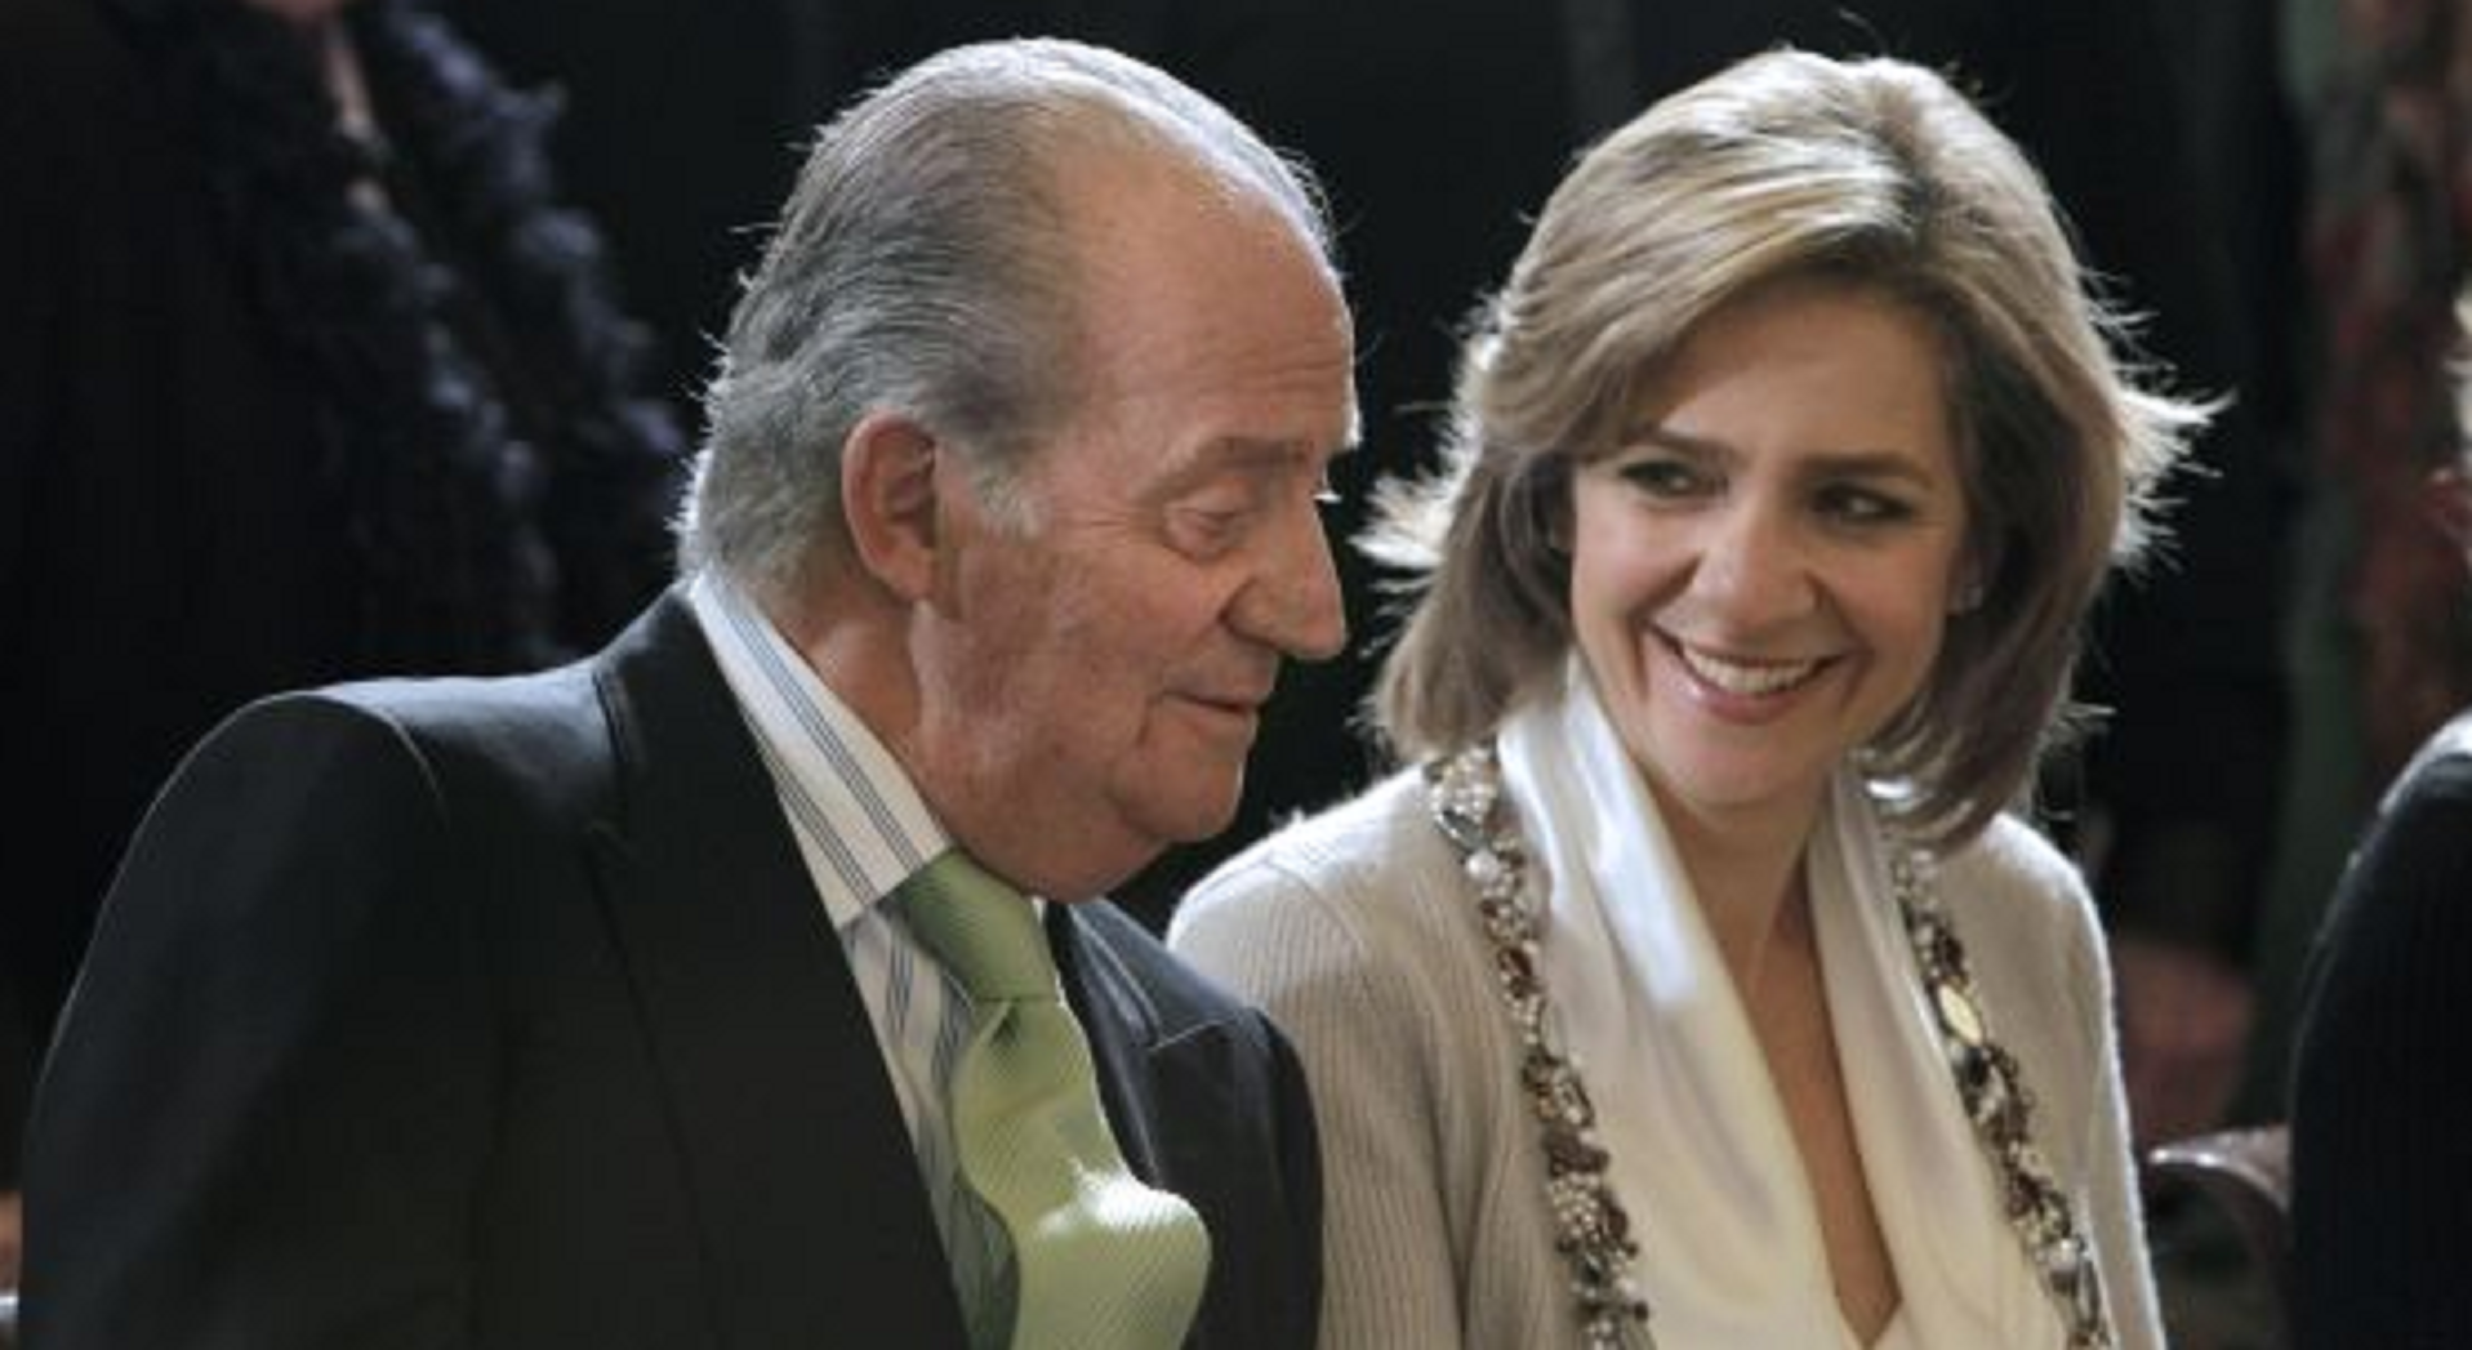 La infanta Cristina augmenta en 19.000 euros els pagaments mensuals per ordre de Joan Carles I